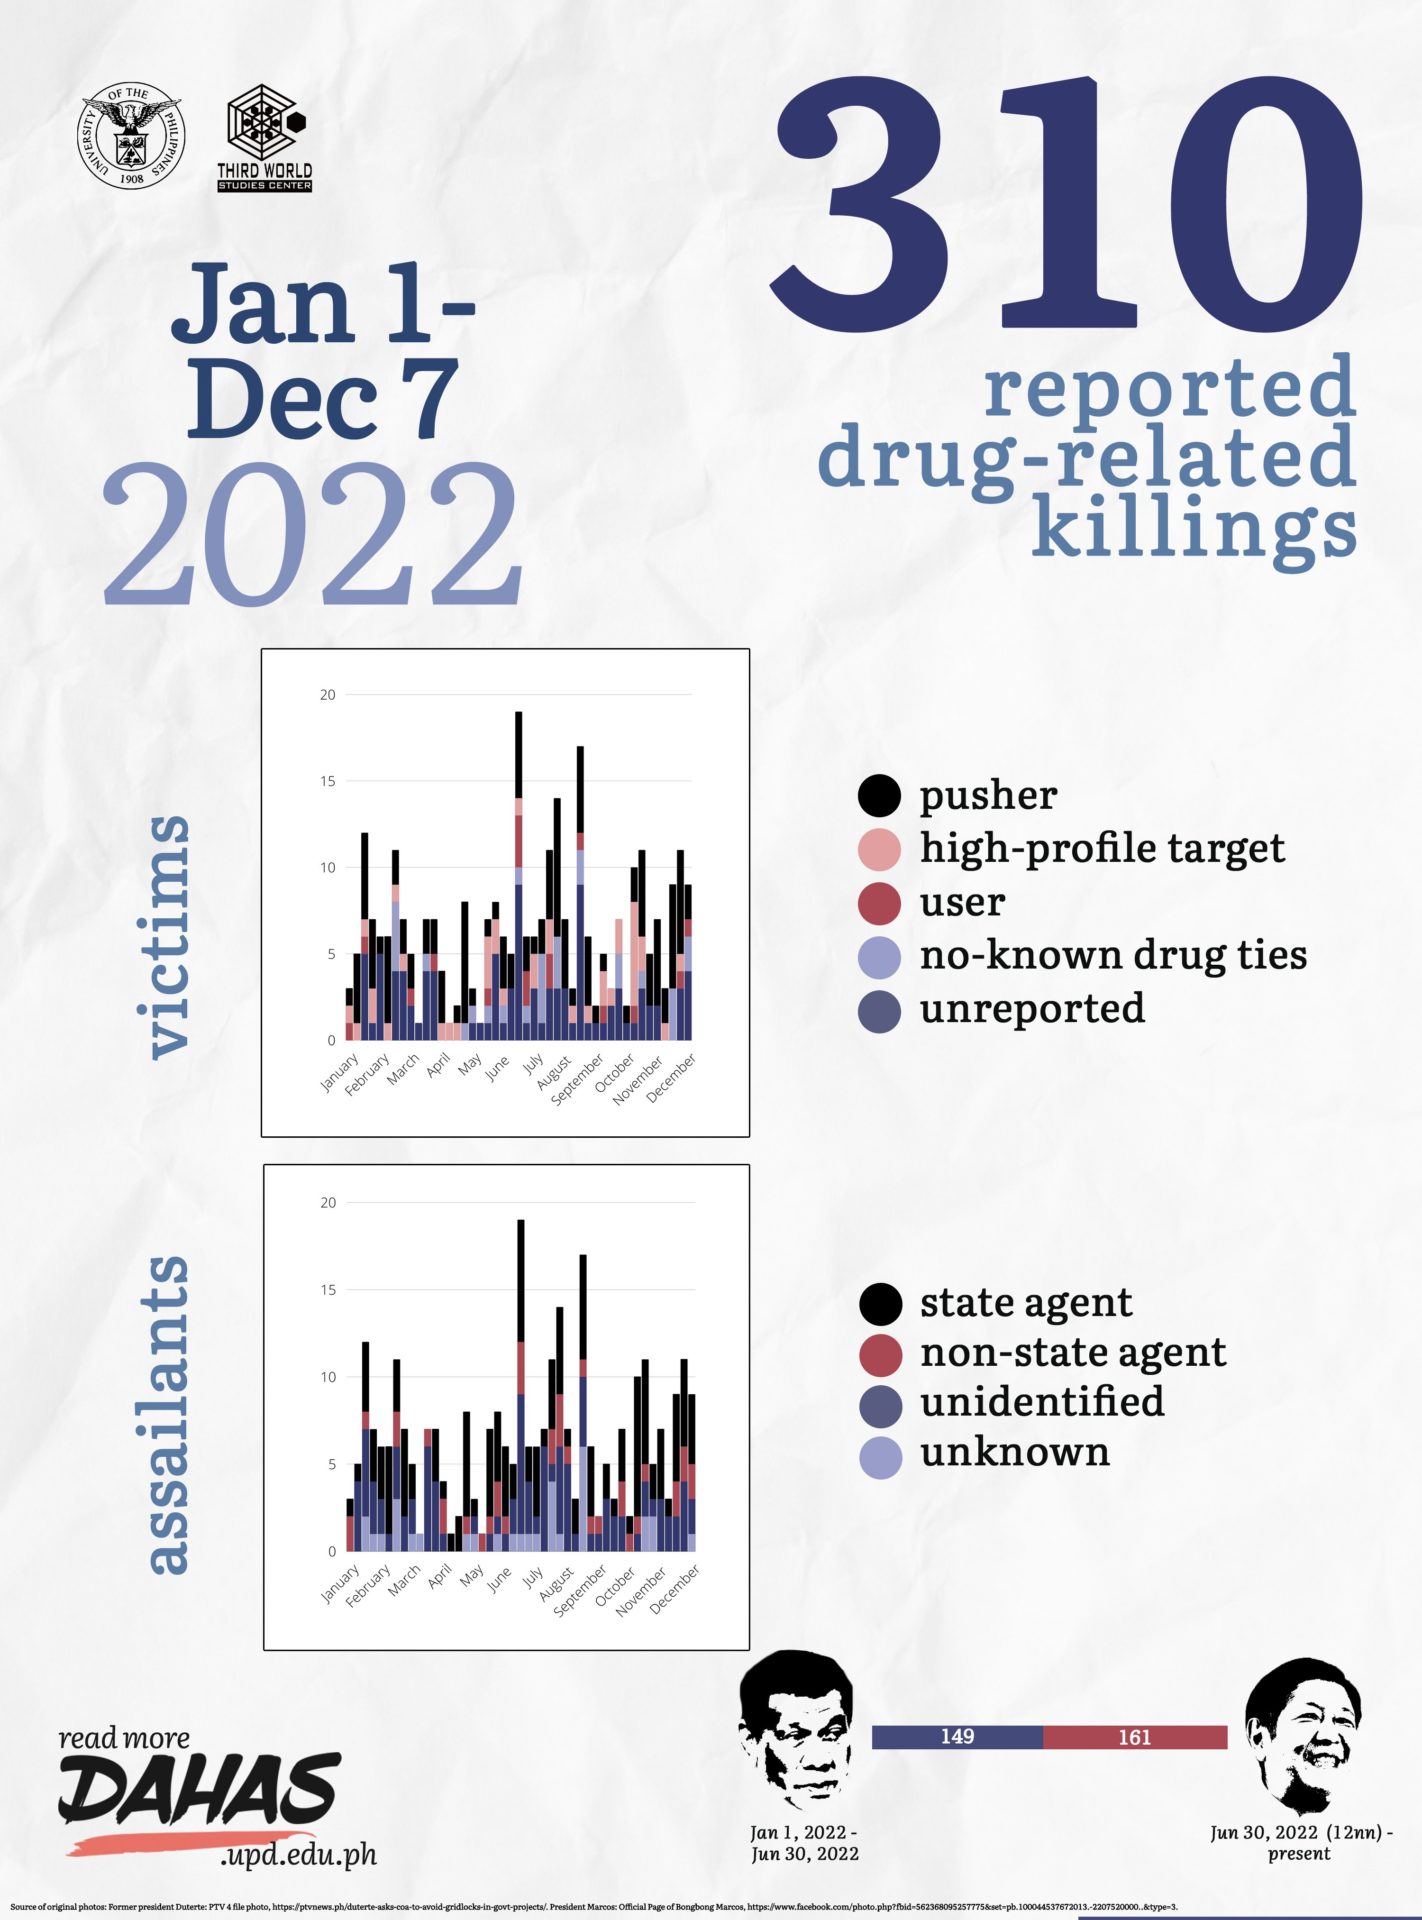 DAHAS-infog Jan 1 to Dec 7 2022-drug-related-killings